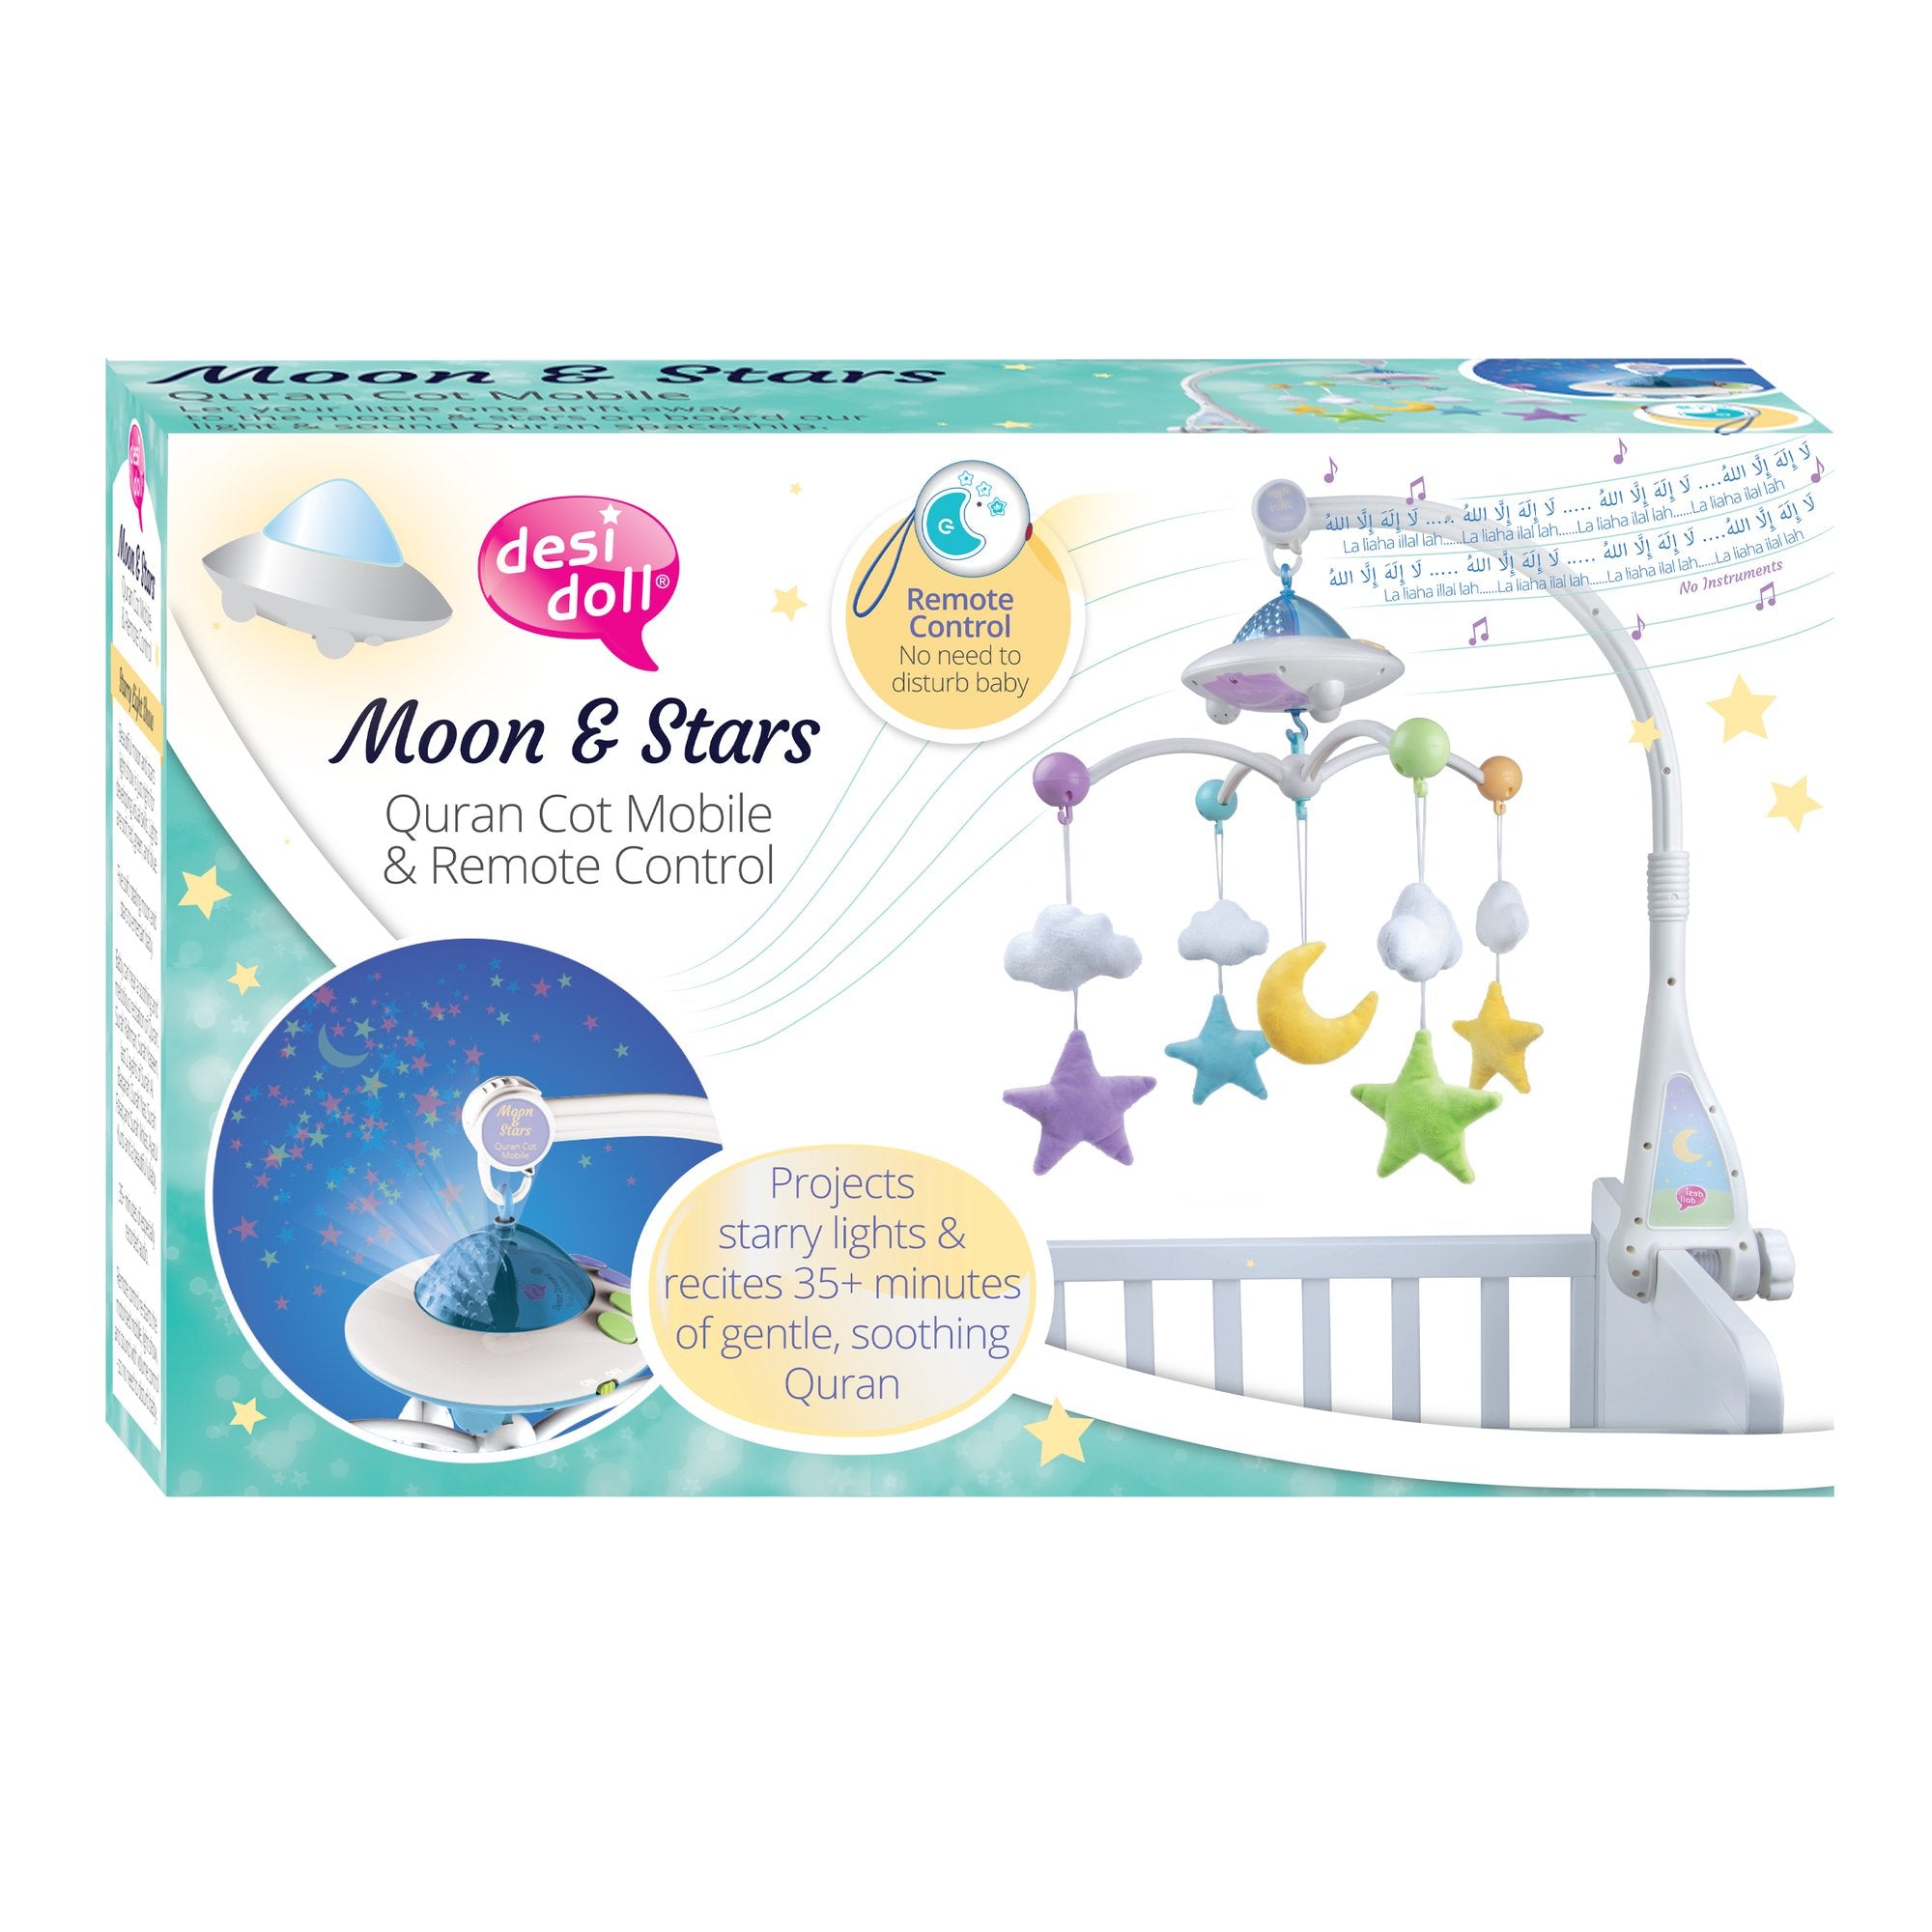 Moon & Stars Koran Kinderbed Mobiel met Lichtprojectie Desi Doll